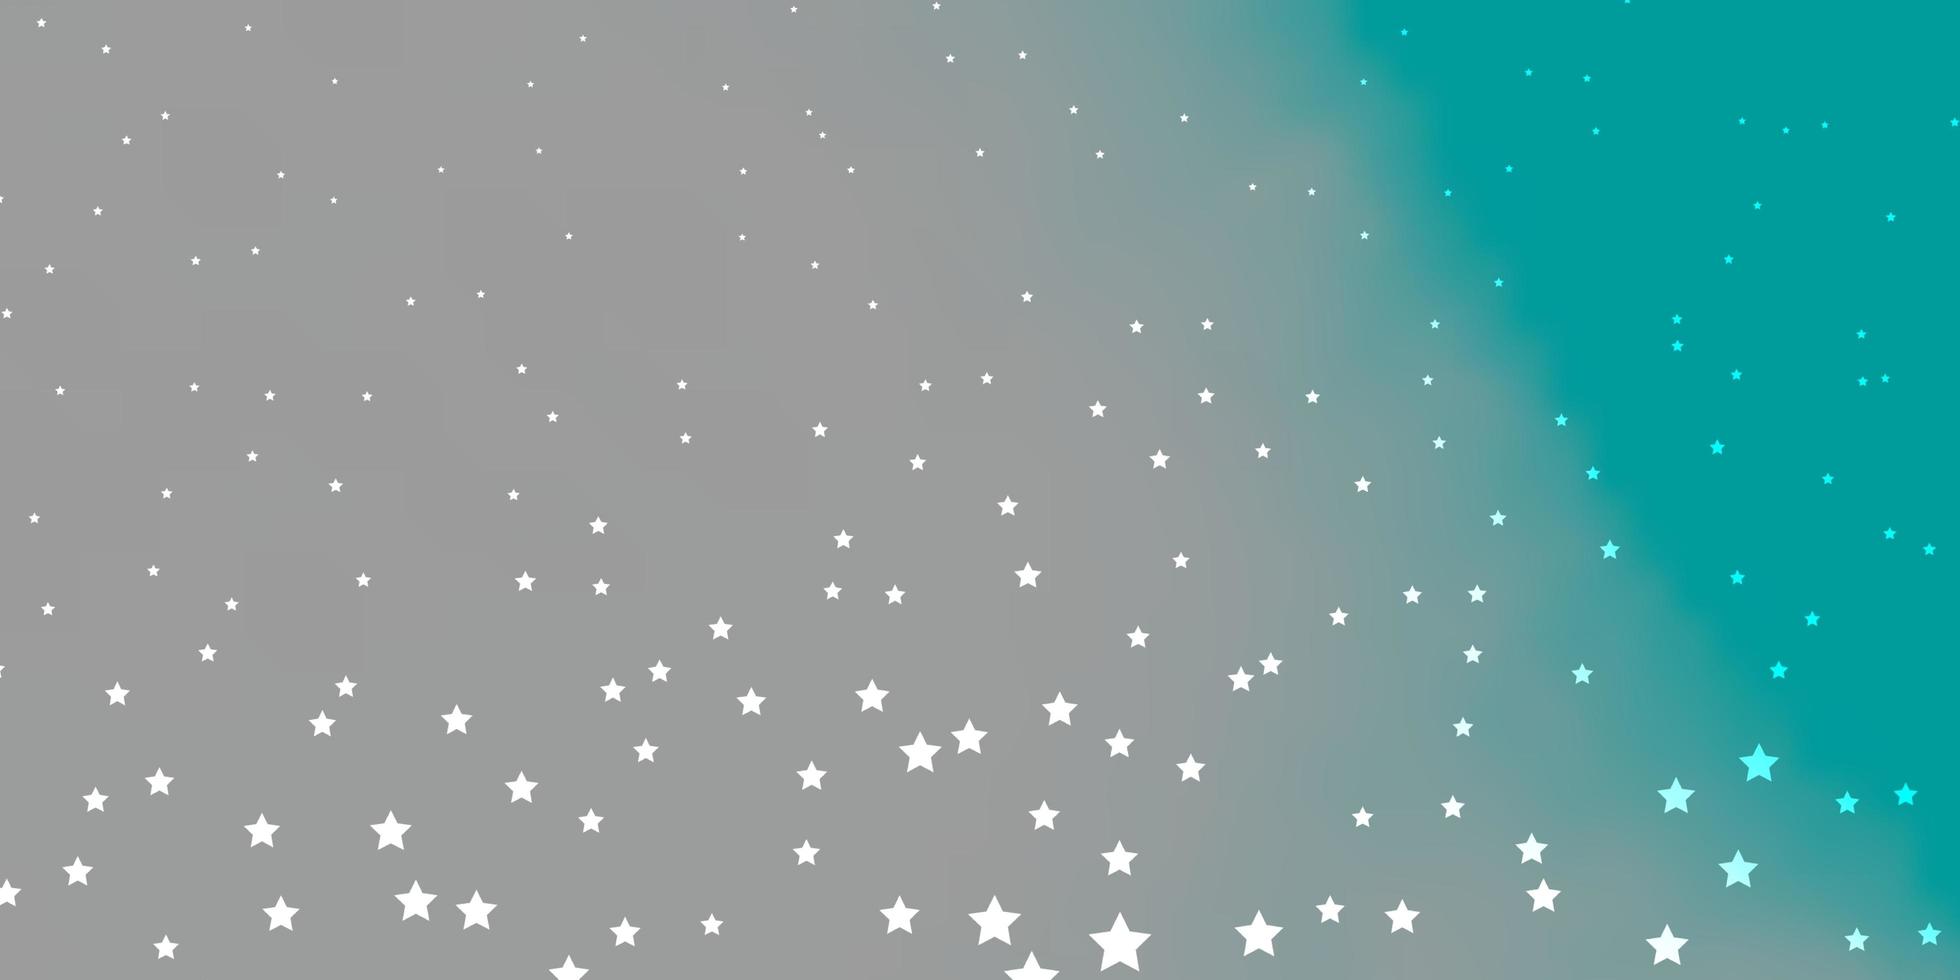 fond de vecteur vert bleu foncé avec des étoiles colorées illustration colorée avec motif abstrait étoiles dégradé pour les livrets publicitaires du nouvel an